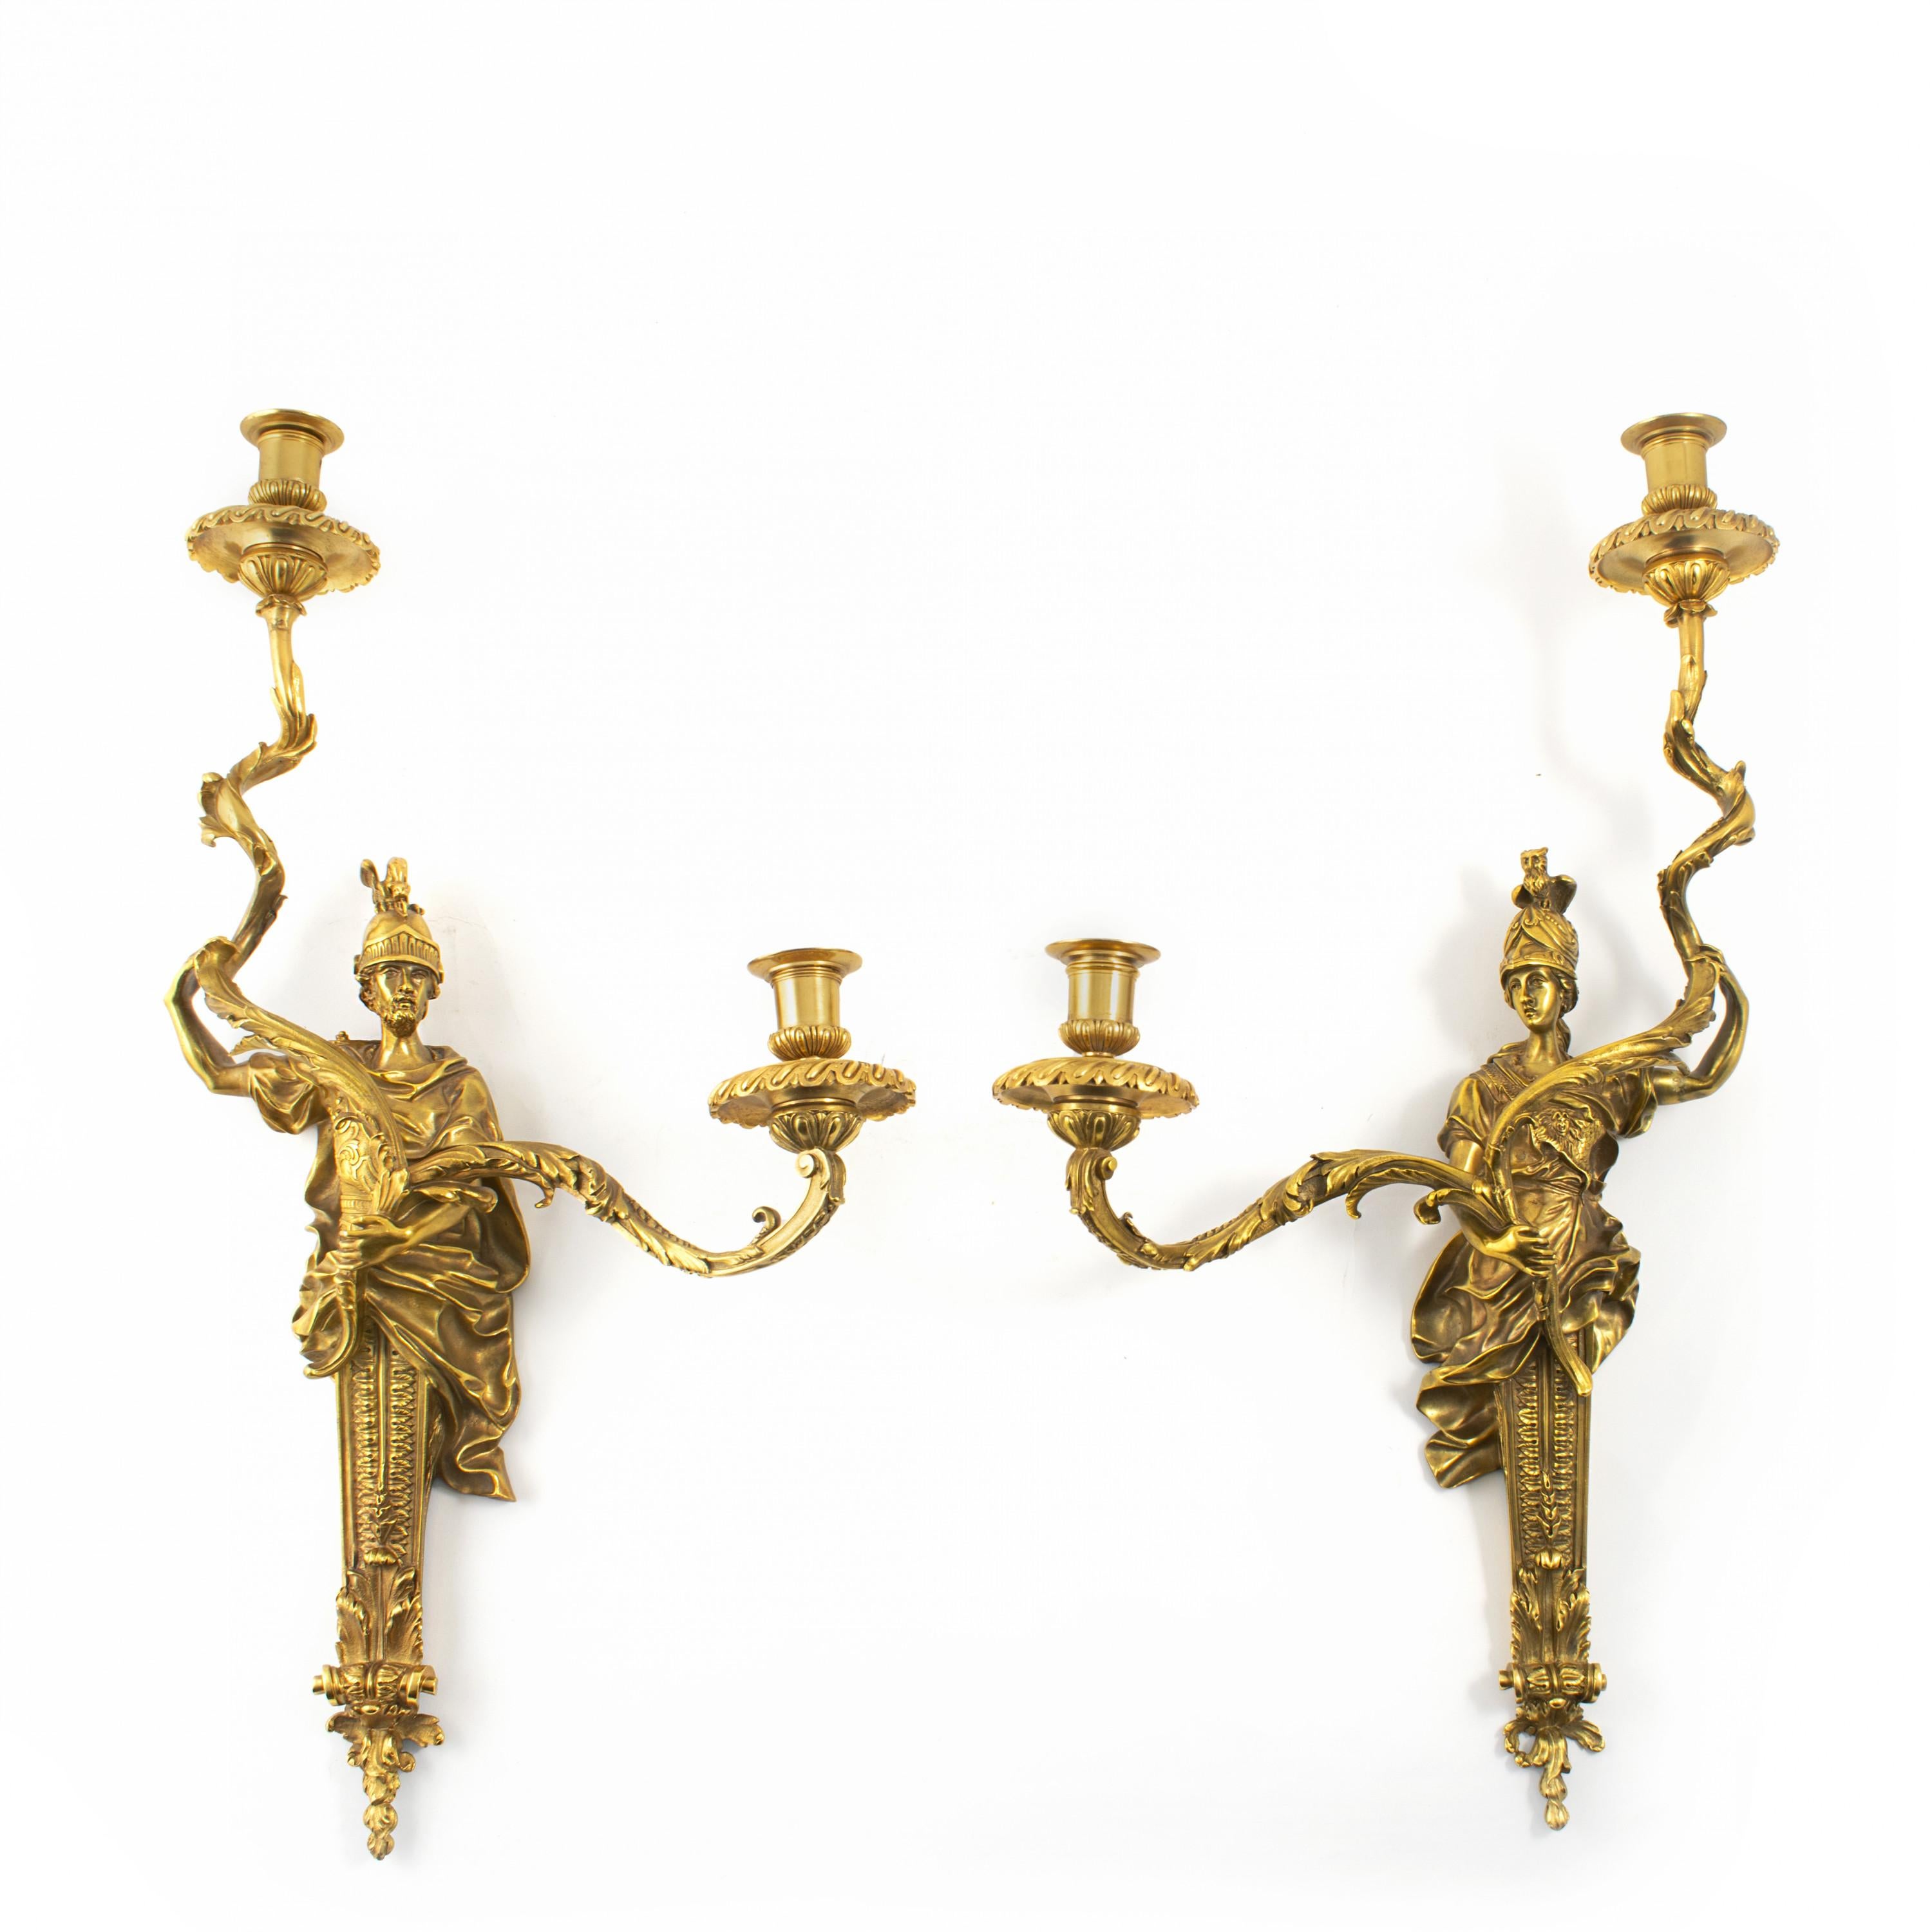 Un ensemble raffiné de quatre appliques en bronze doré de style Louis XVI.
Fabriqué en France à la fin du XIXe siècle par Henri Viane.
Haute qualité.
Chacune est équipée de deux lumières maintenues par une sculpture en bronze.
Dimensions :